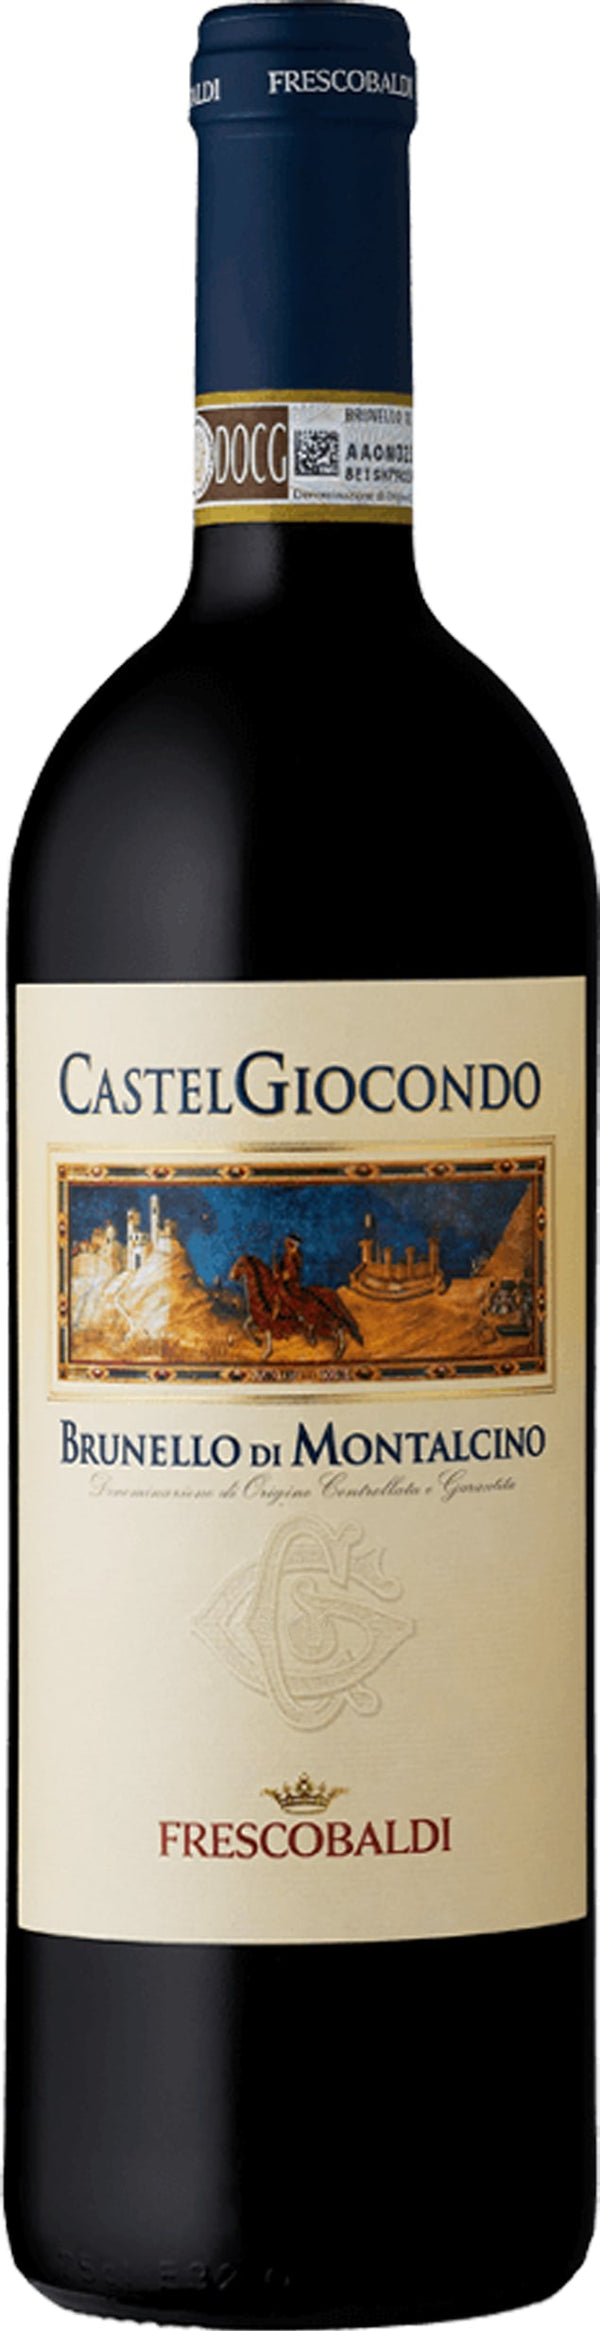 Frescobaldi Castelgiocondo Brunello di Montalcino DOCG 2017 6x75cl - Just Wines 